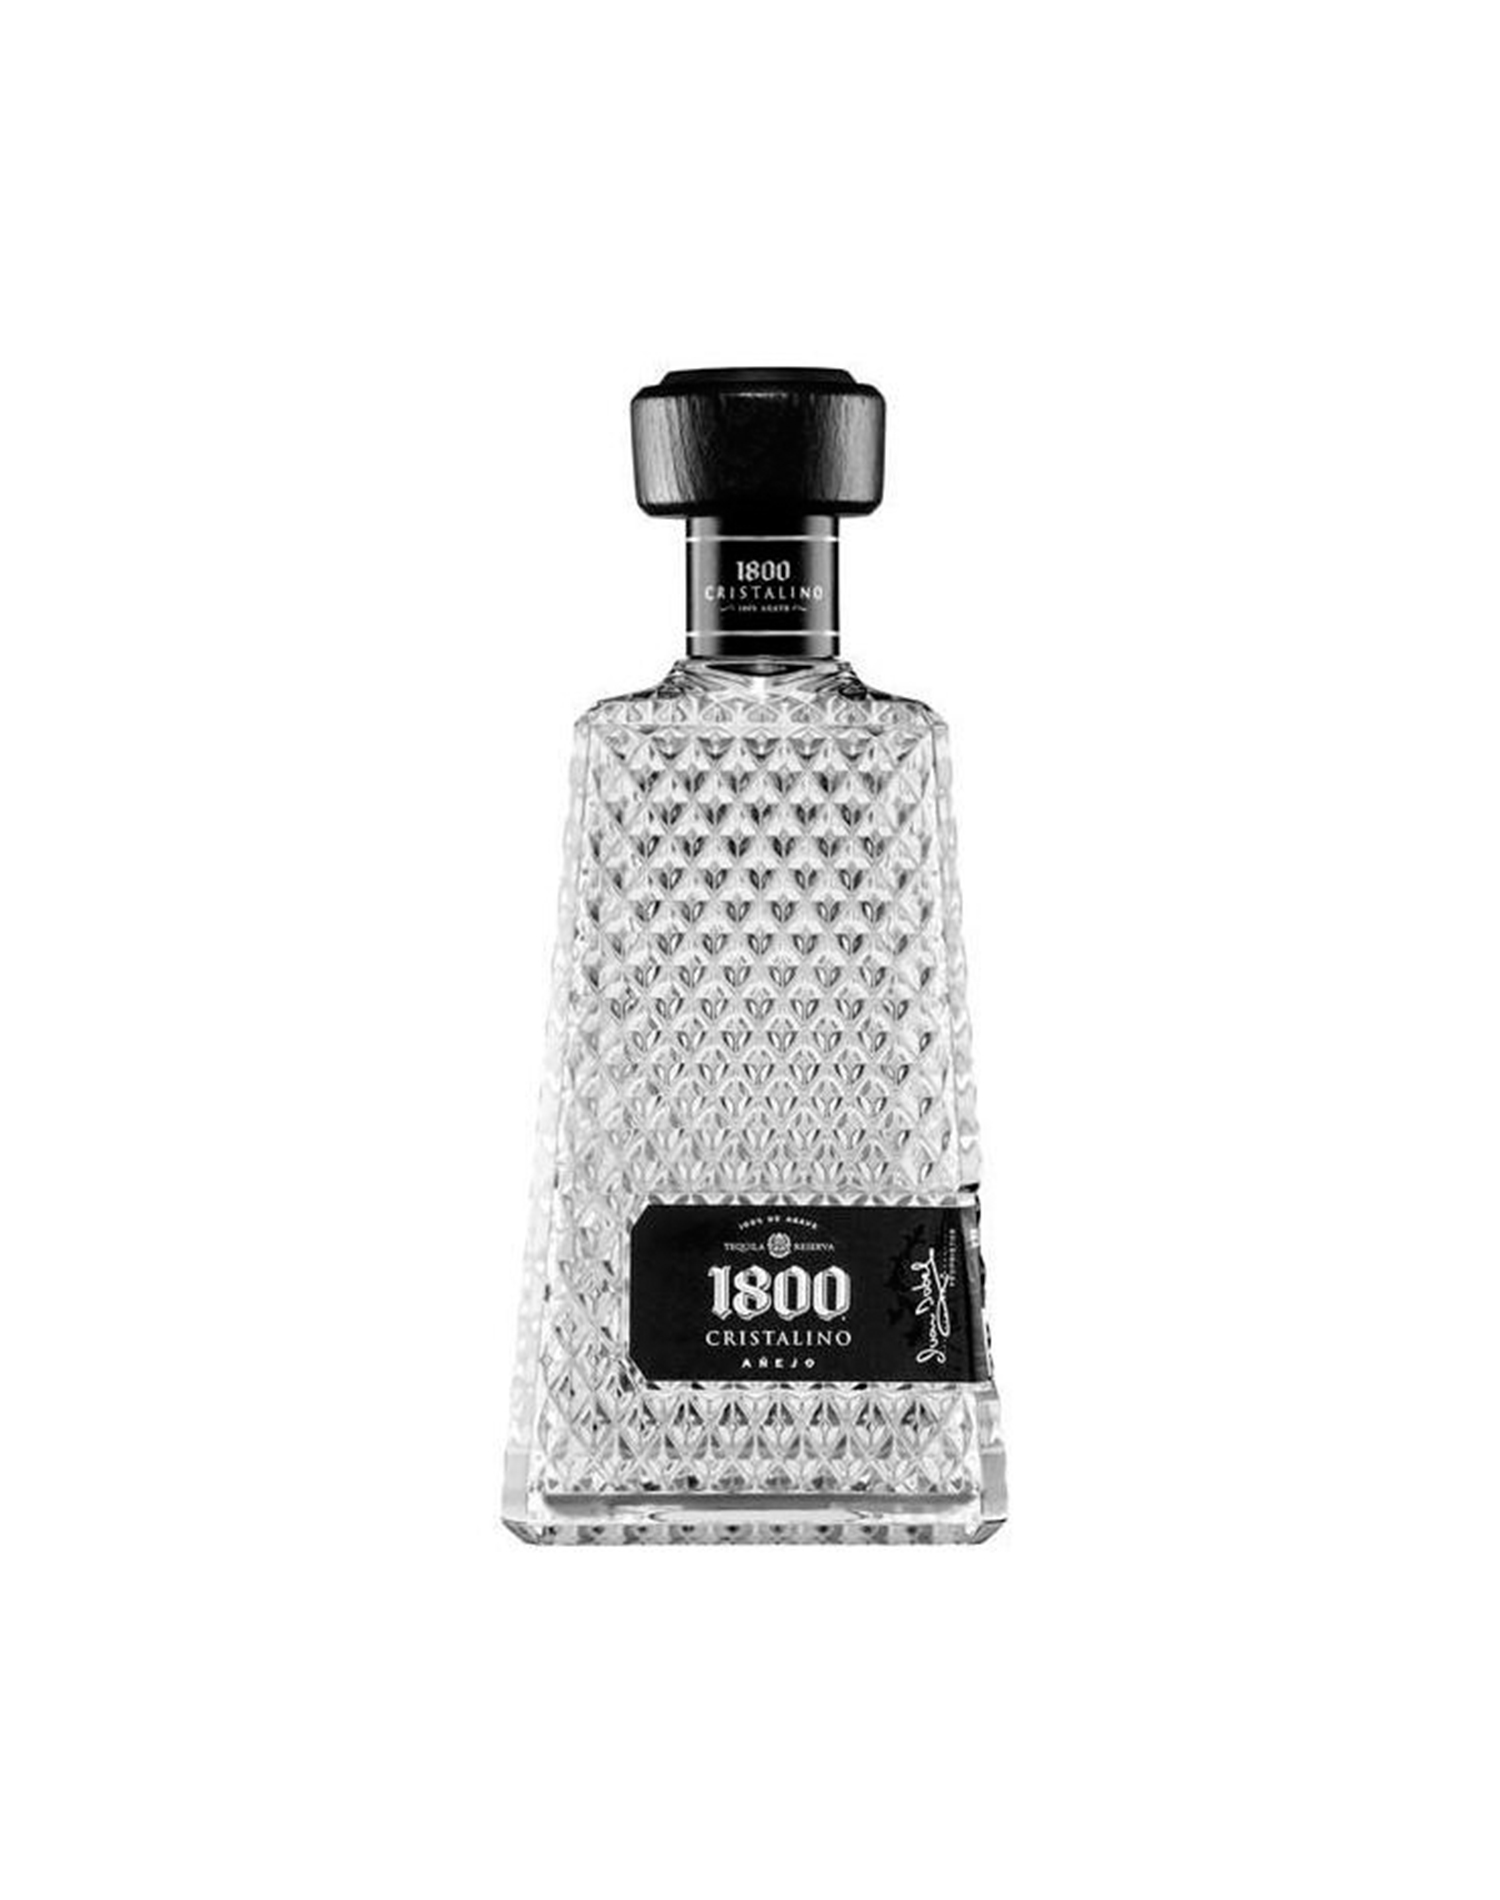 Tequila Cristalino Añejo 1800 700 ml Onix